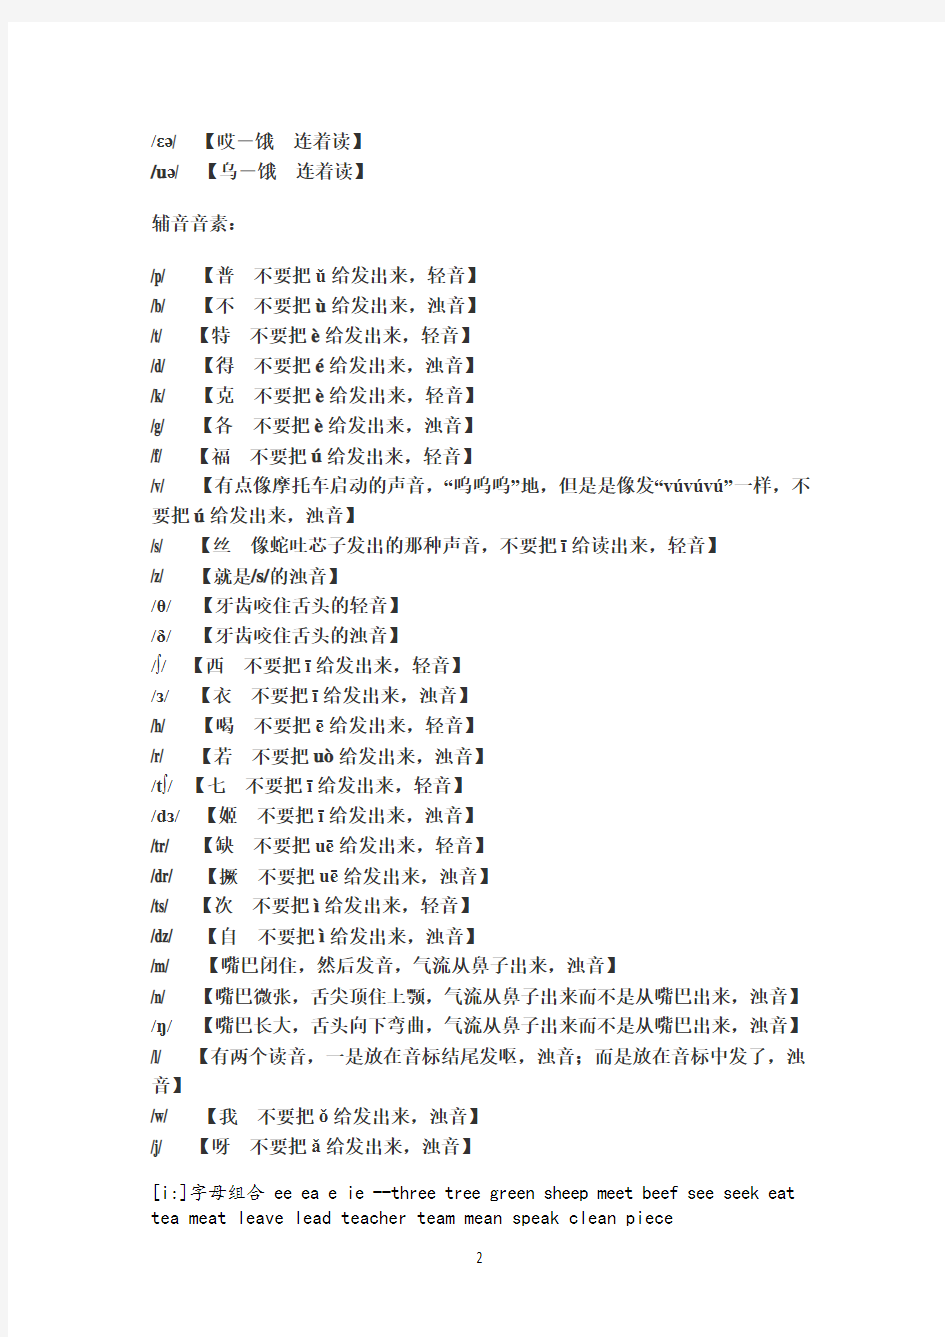 (完整)英语48个音标中文谐音读法大全(2),推荐文档